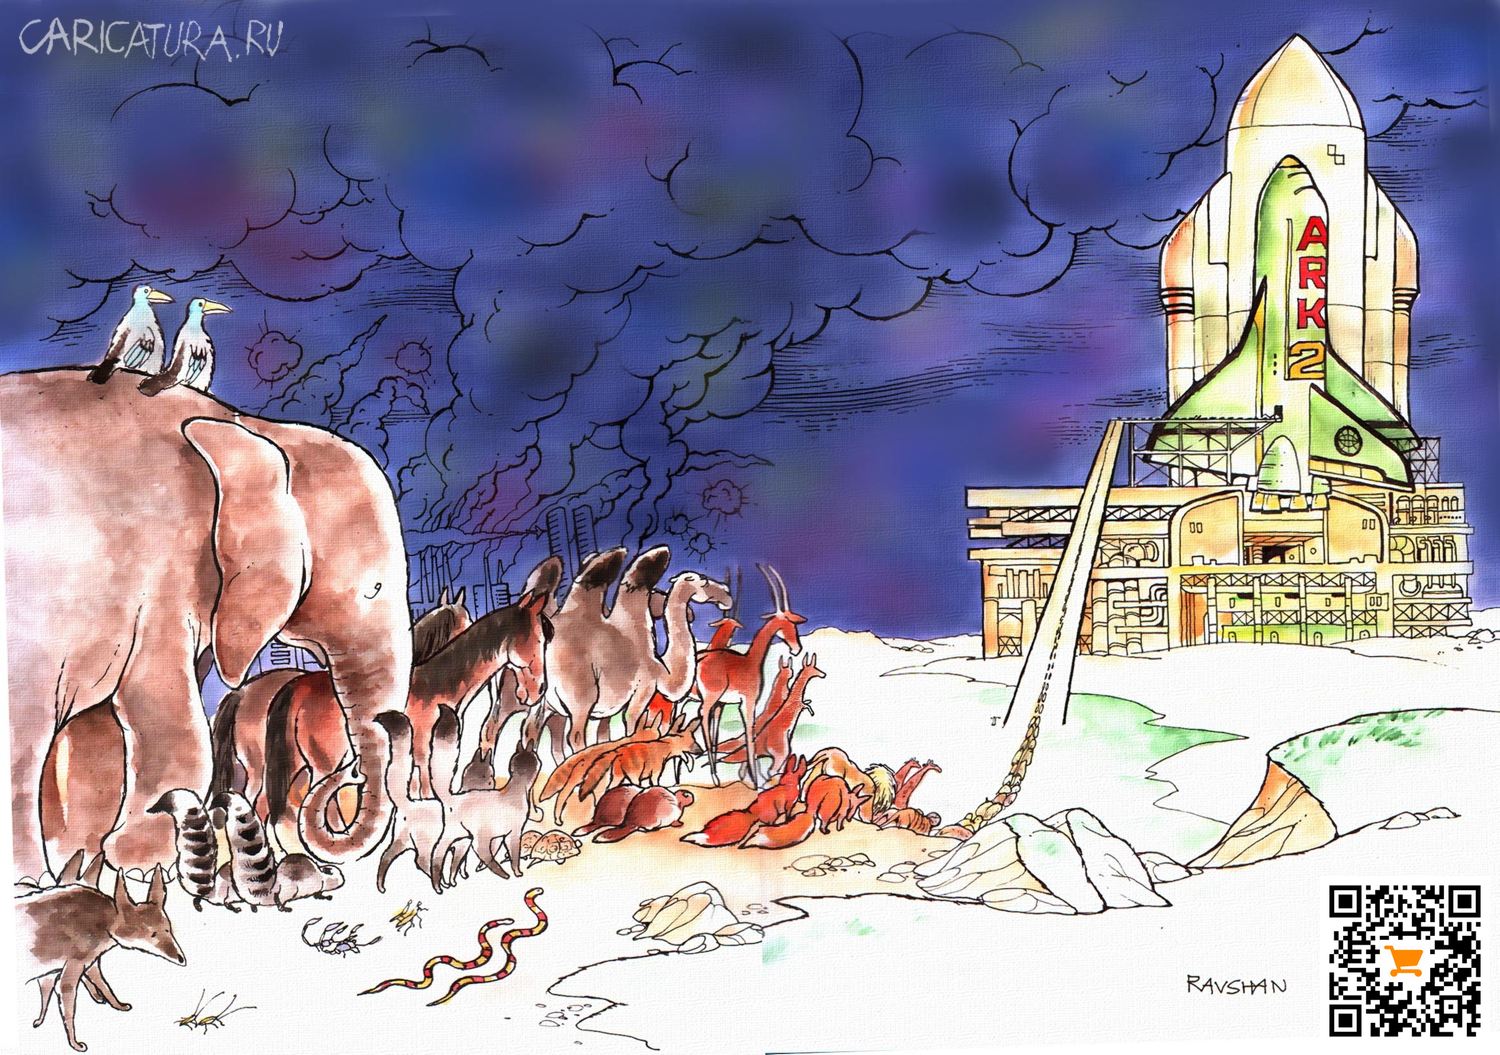 Карикатура "Ковчег. Вариант космический", Равшан Эгамбердиев